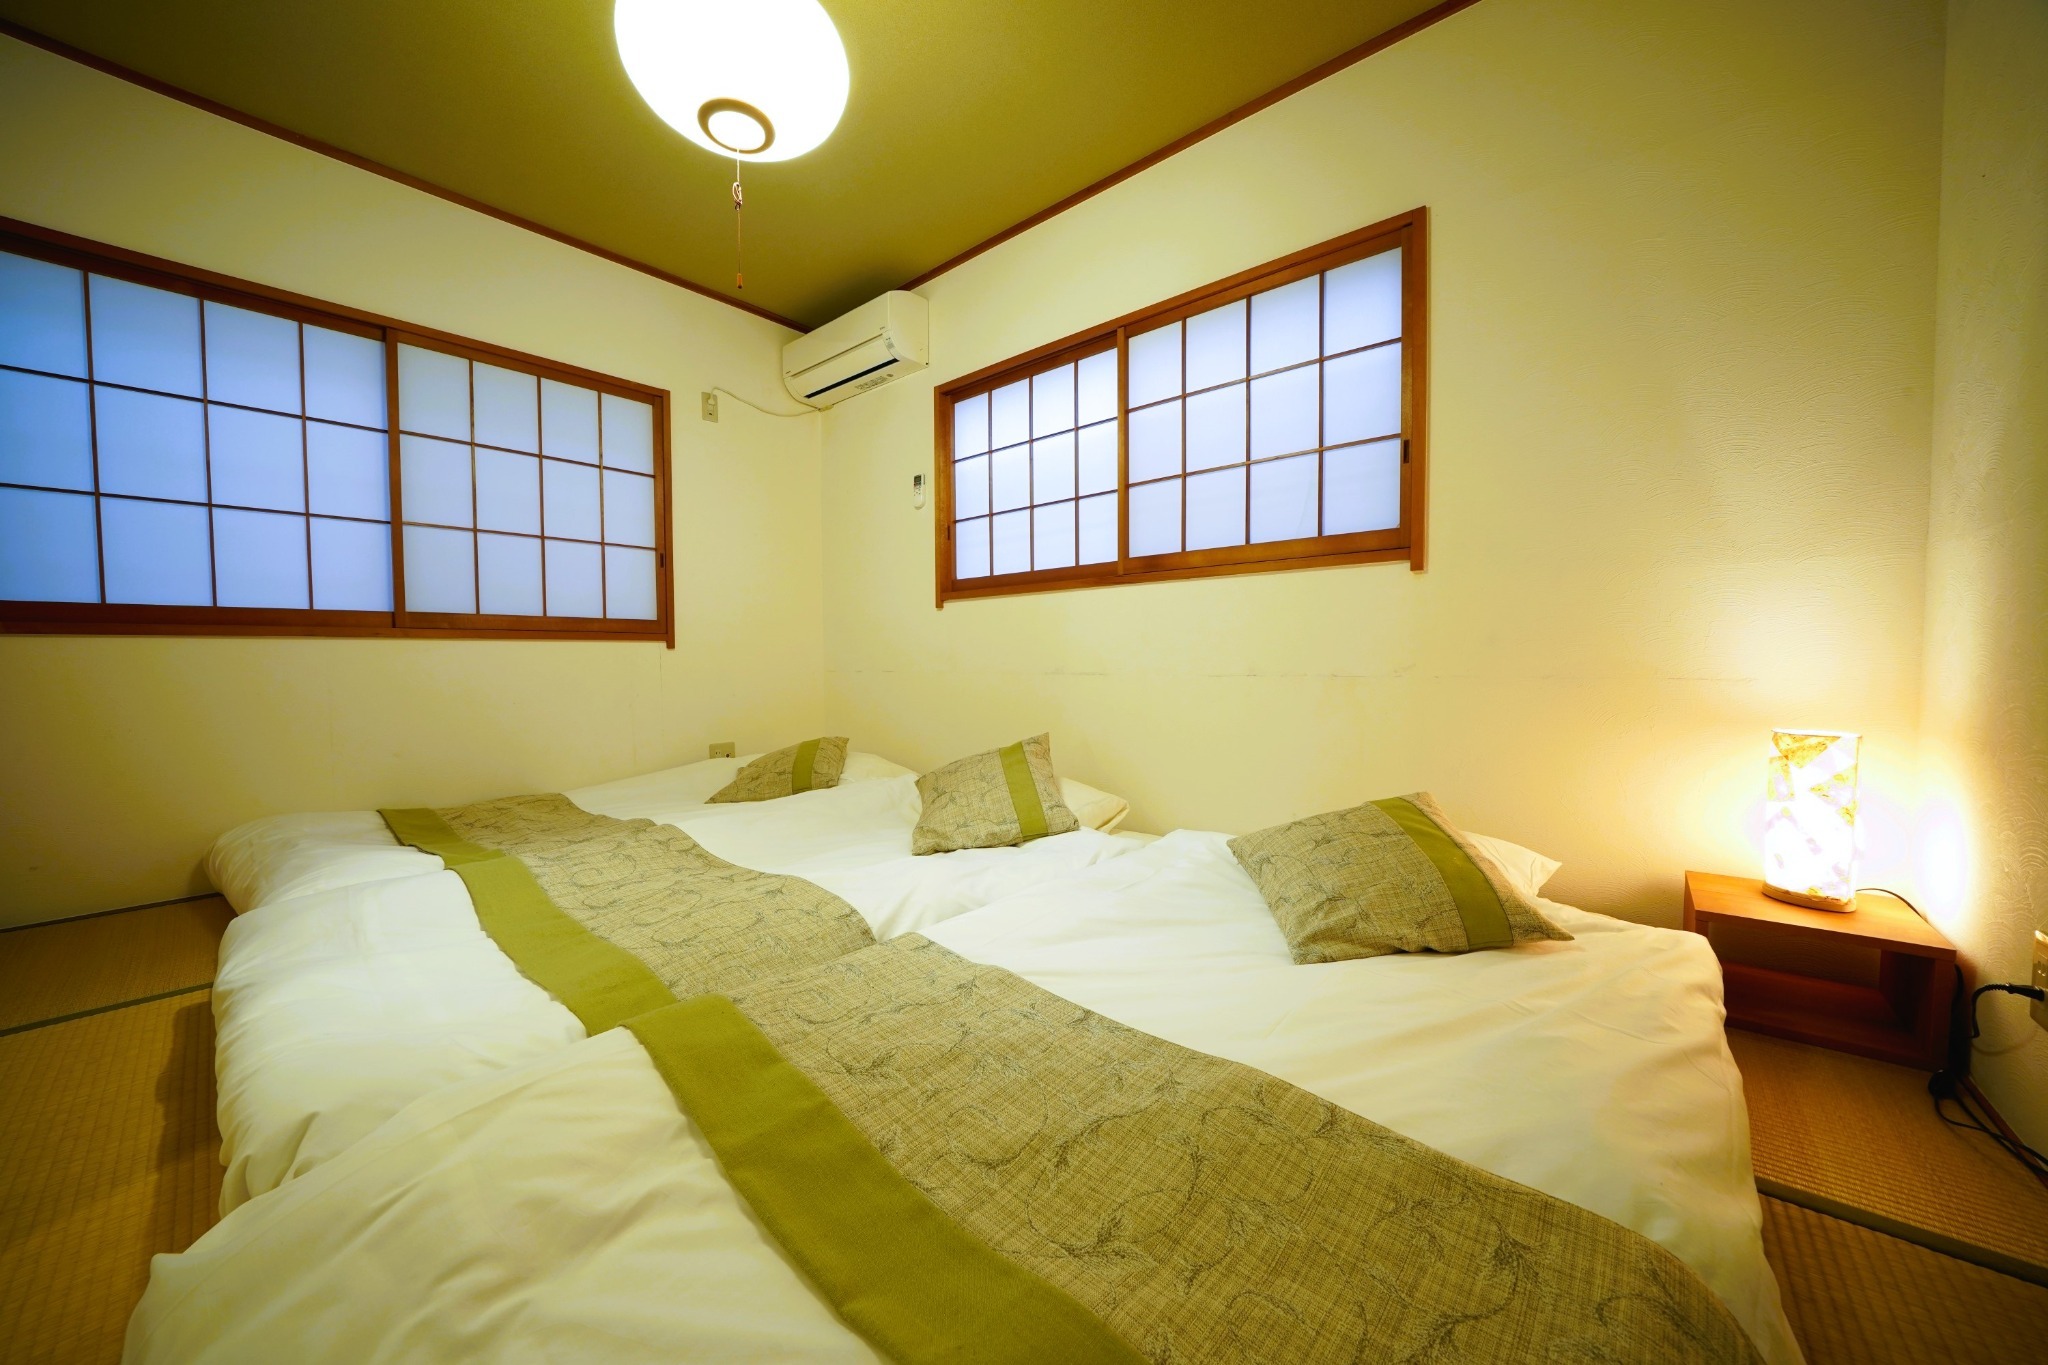 広さ75m2 定員6名 2ベッドルーム 一軒家貸切 無料駐車場あり 新宿近く中野坂上から5分